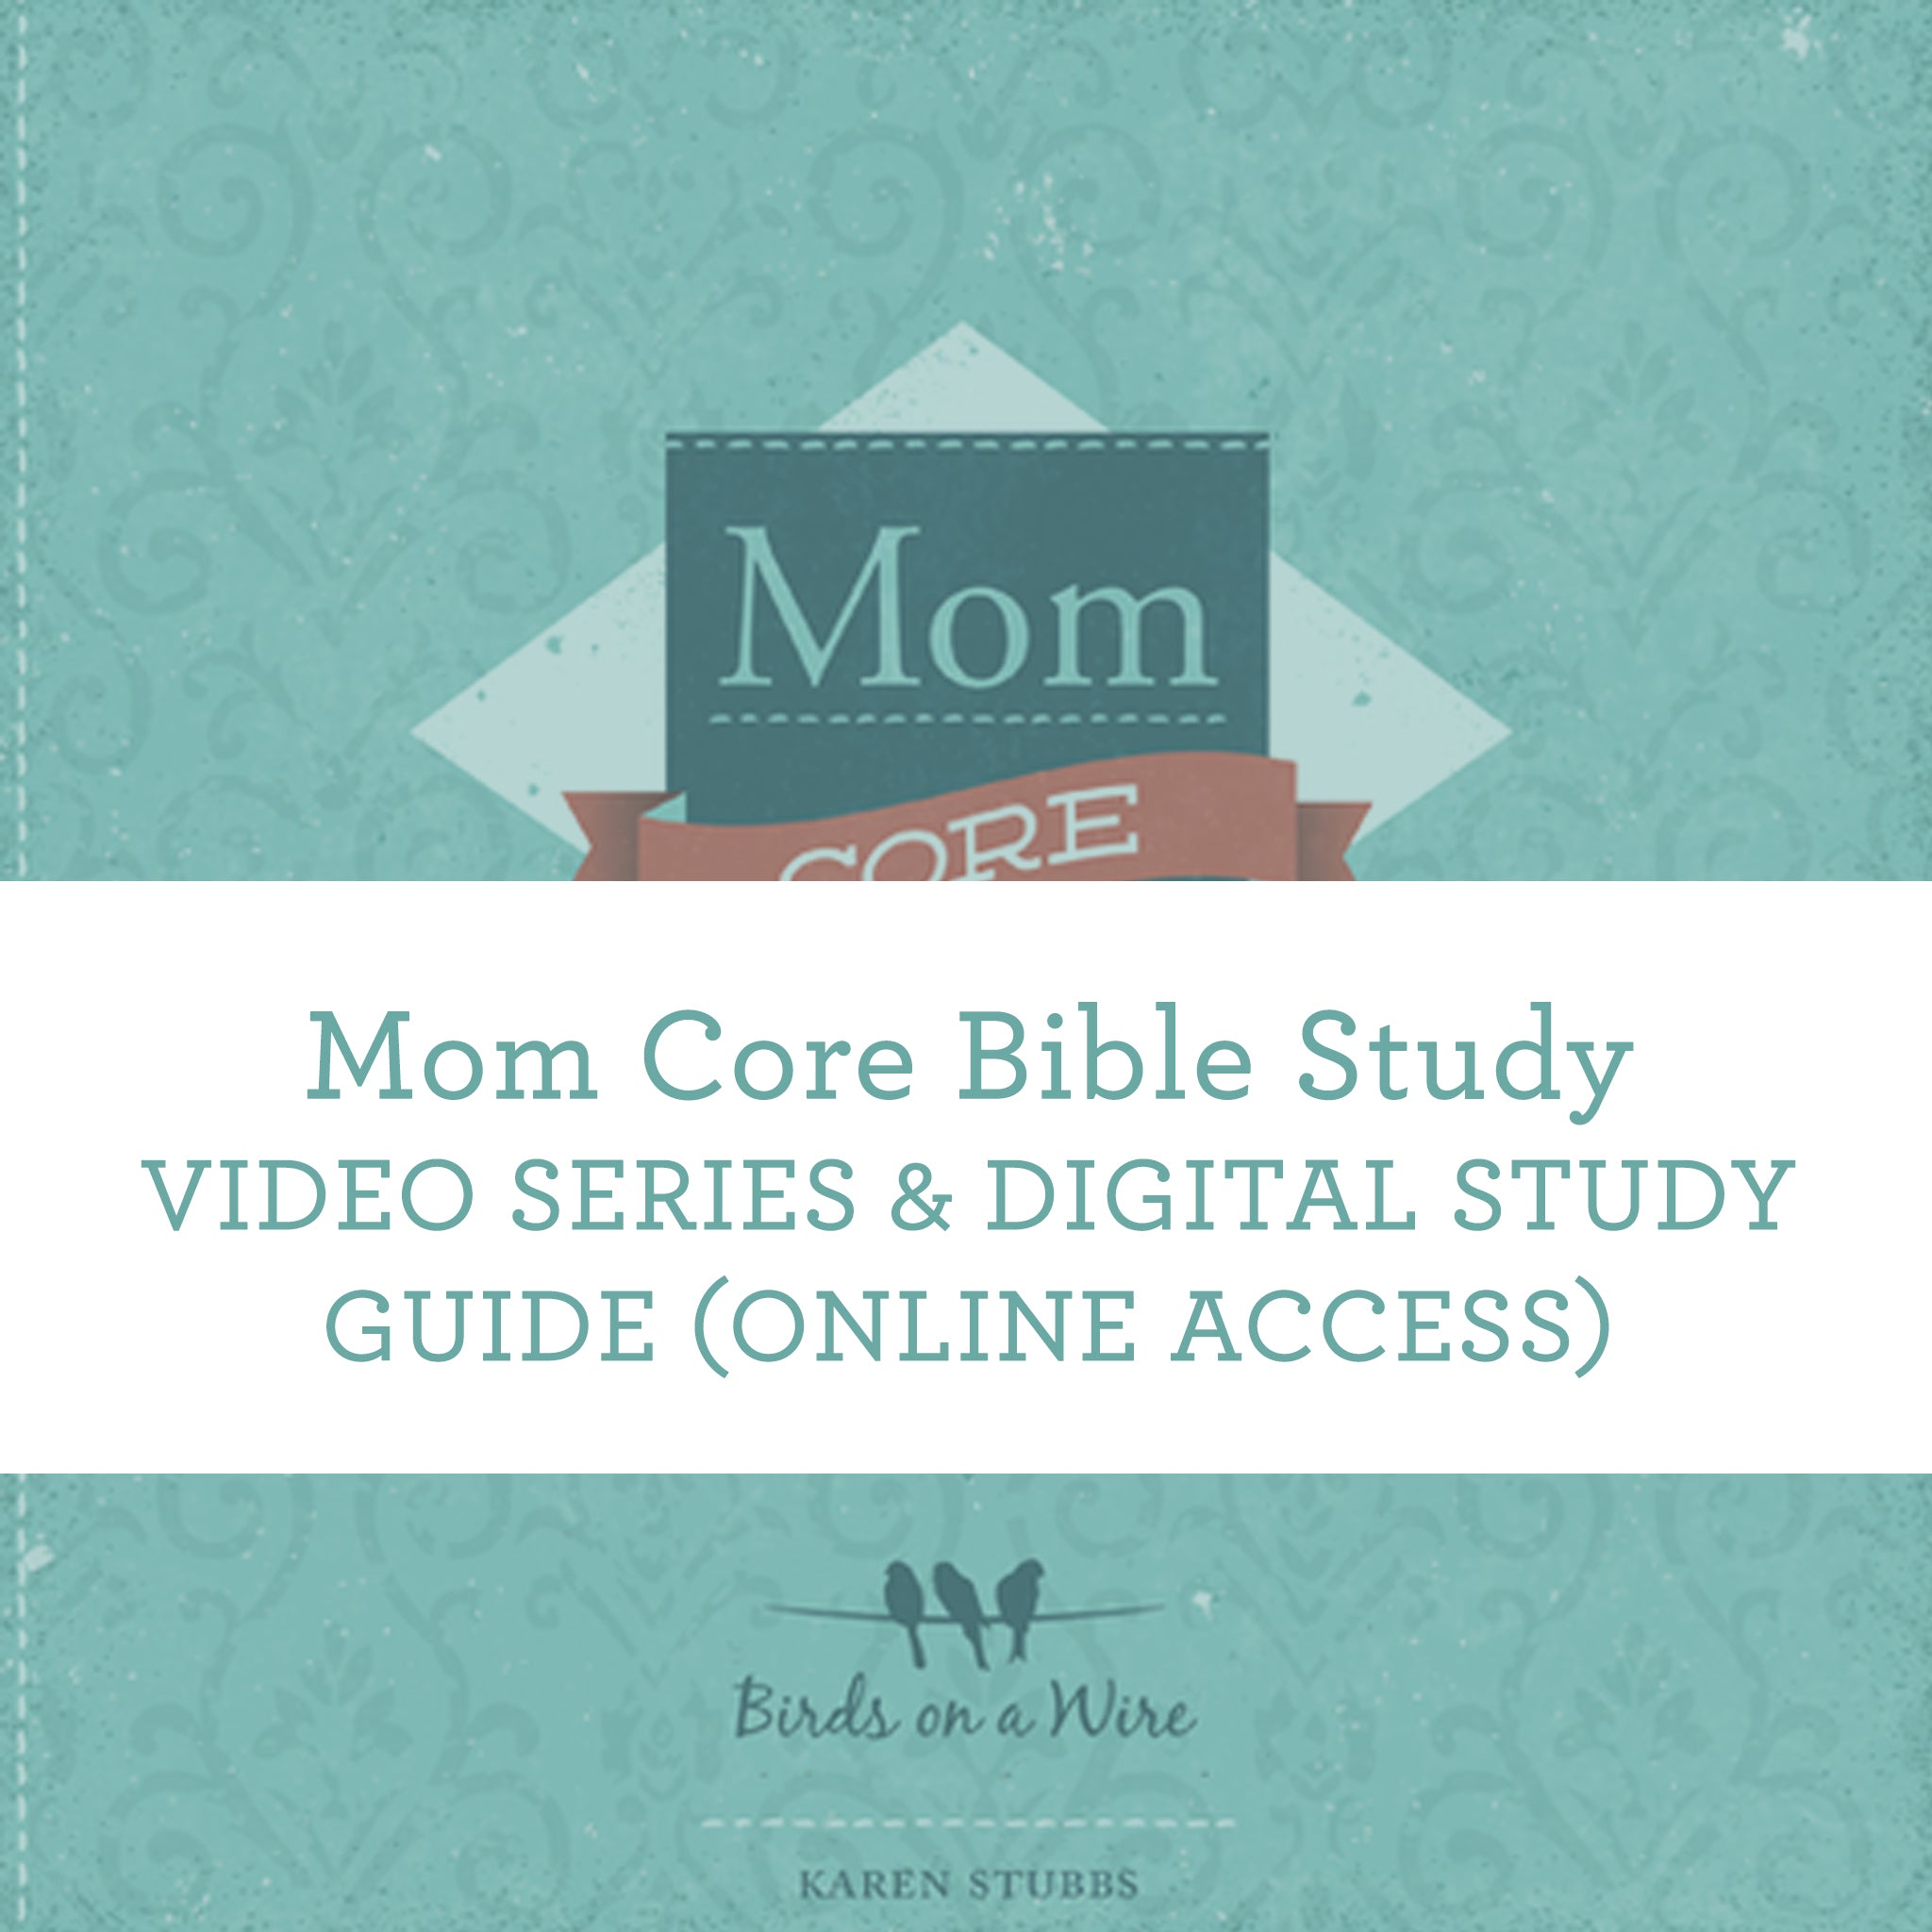 Moms Video Online